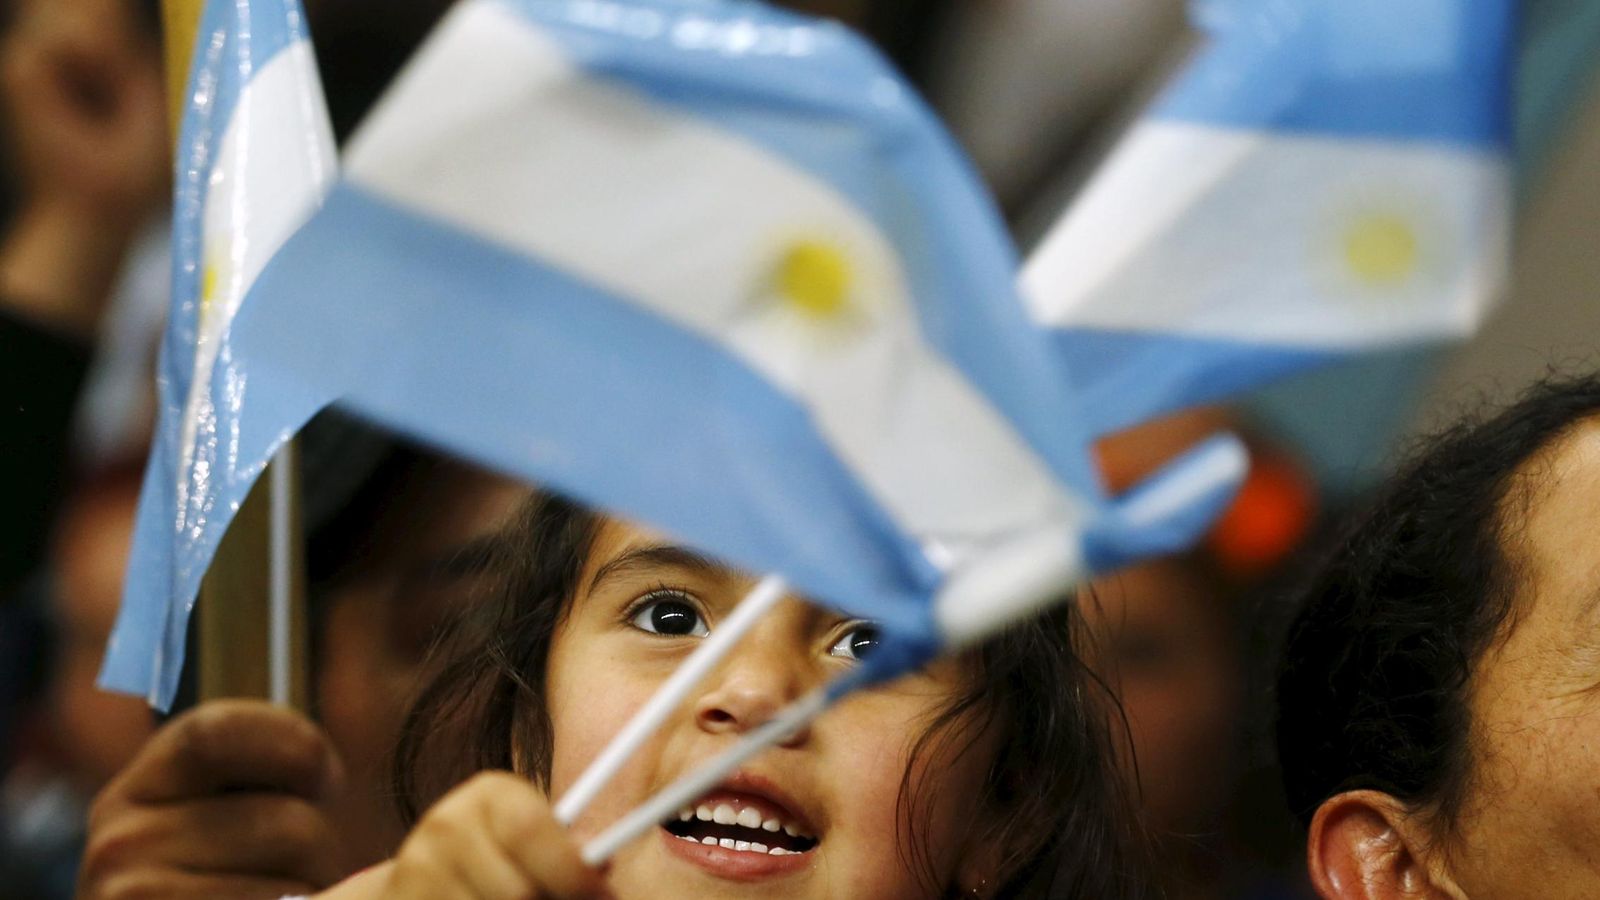 Foto: Una niña agita la bandera argentina durante un mitin del candidato oficialista Daniel Scioli en el suburbio bonaerense de La Matanza, el 19 de noviembre de 2015. (Reuters)